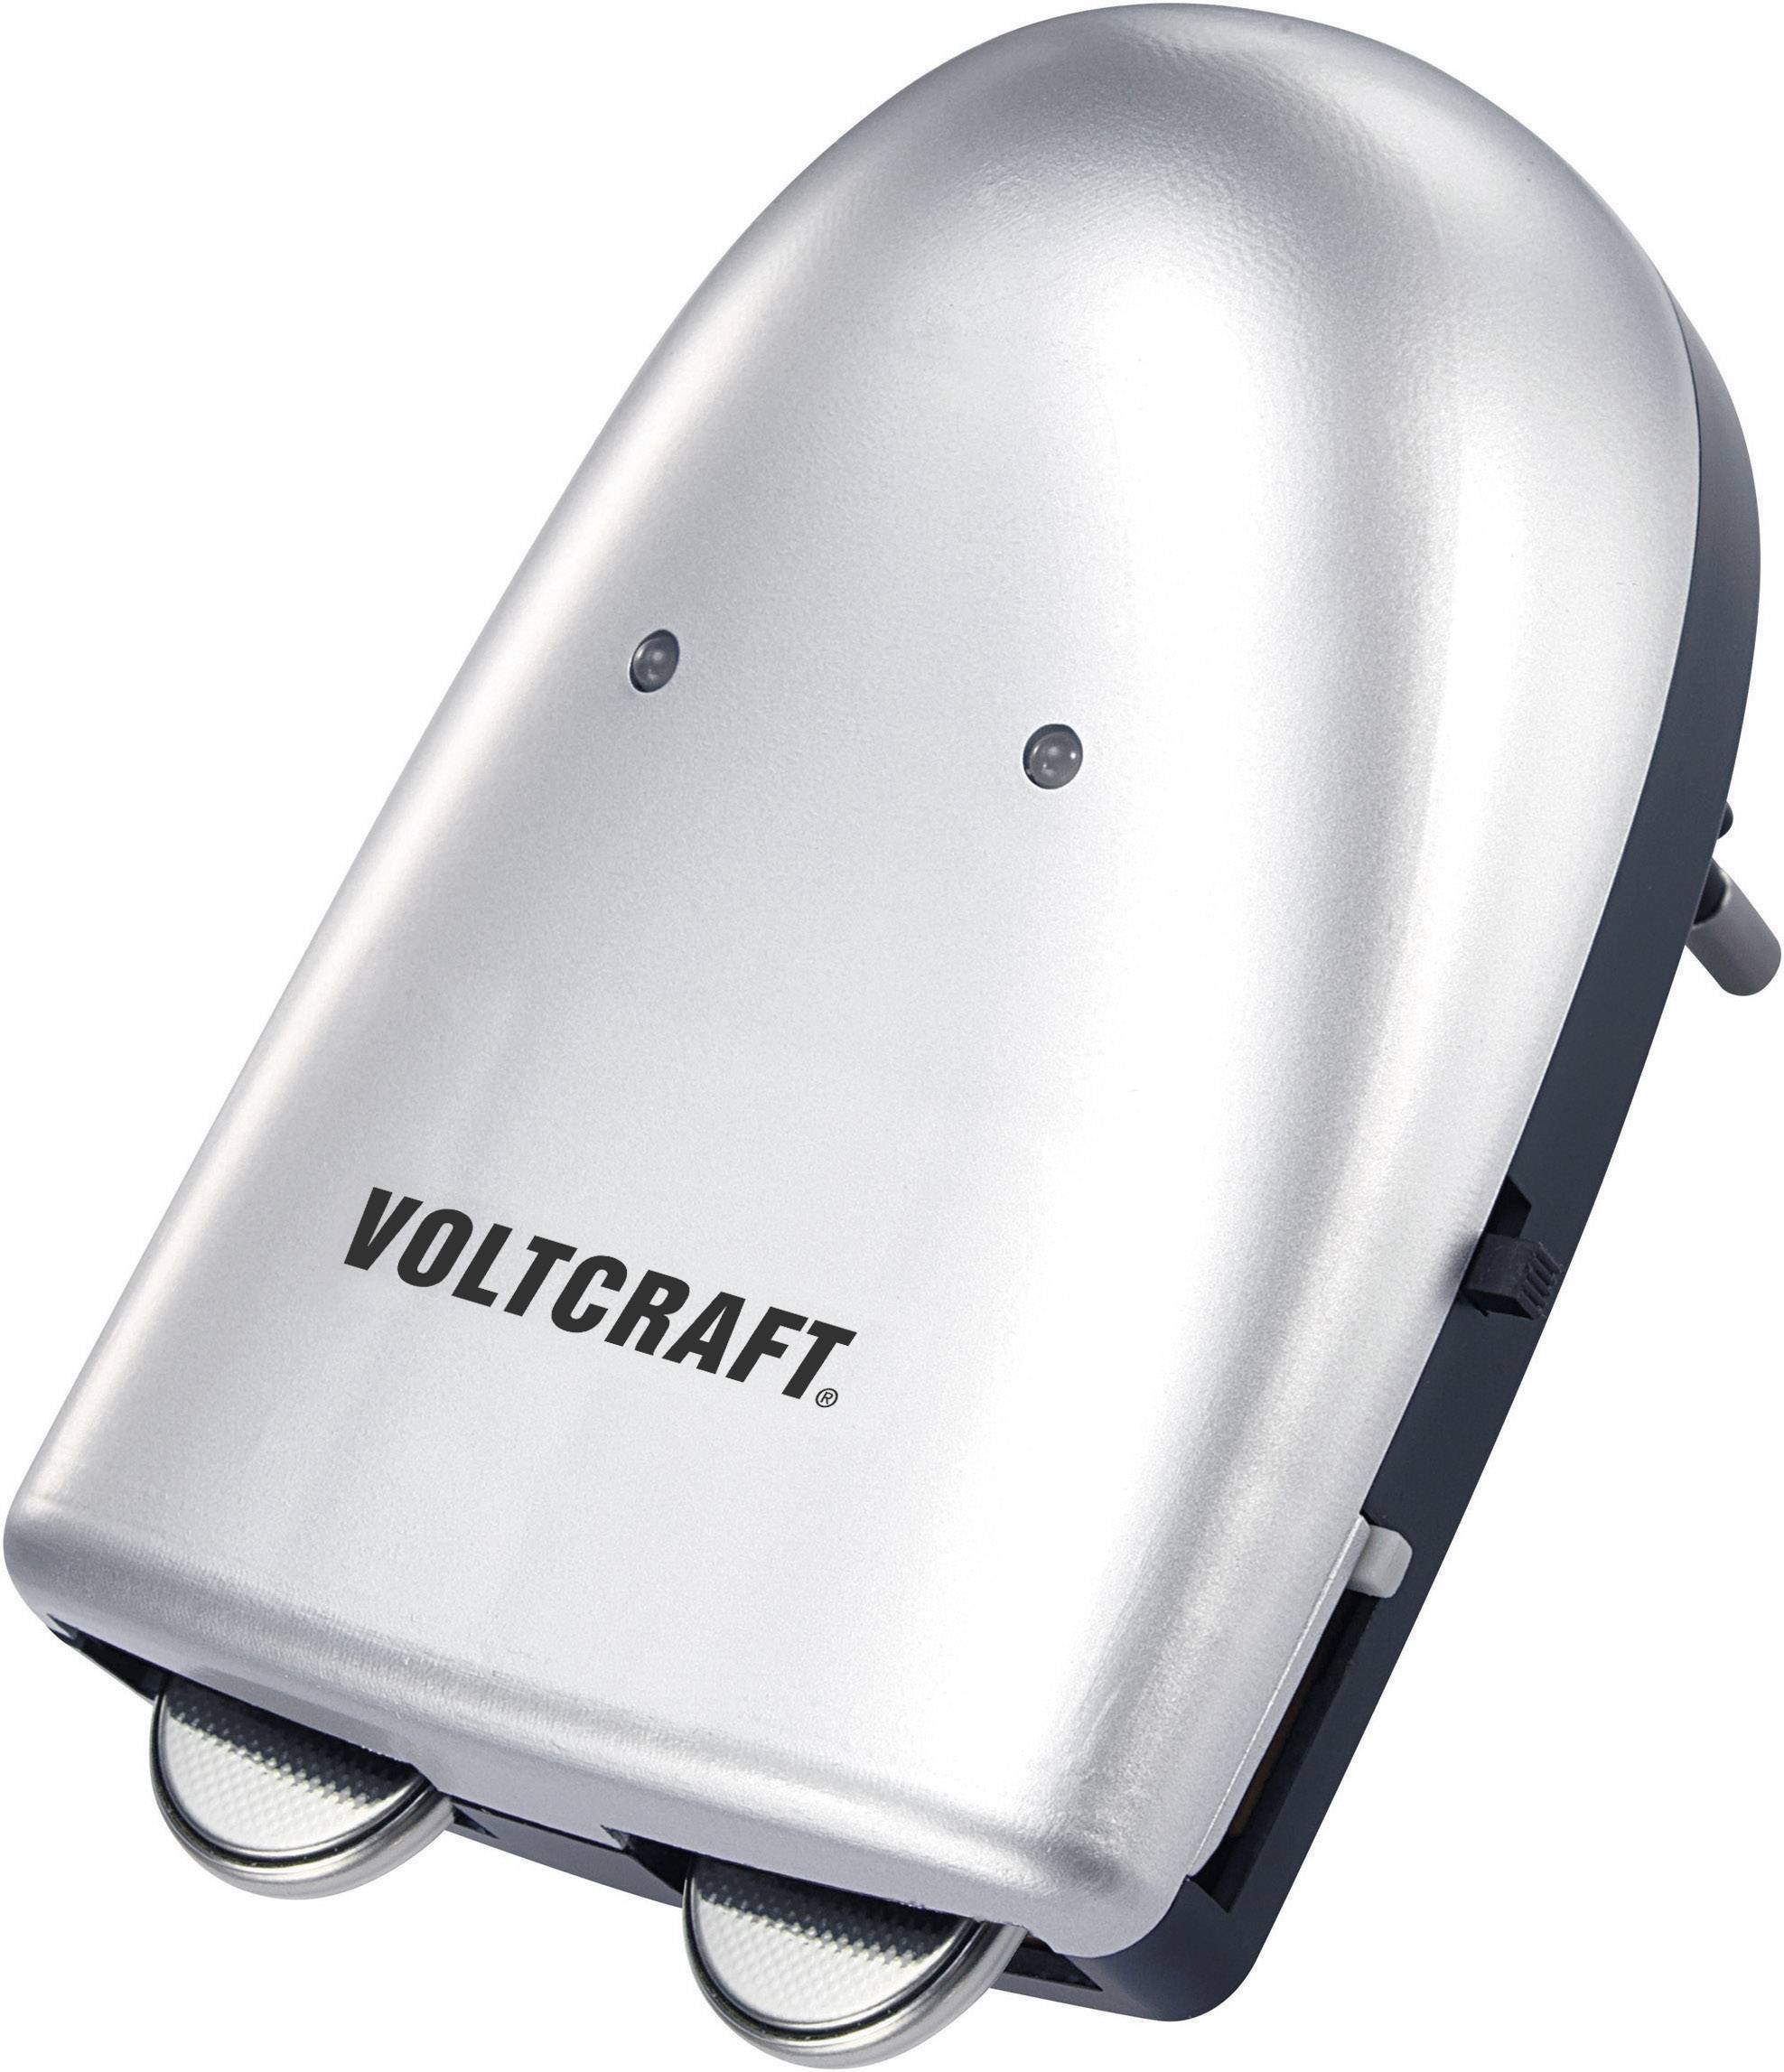 Allergie Voetzool Kostbaar VOLTCRAFT Knoopcelbatterij-oplader Li-ion Oplaadbare knoopcel kopen ?  Conrad Electronic